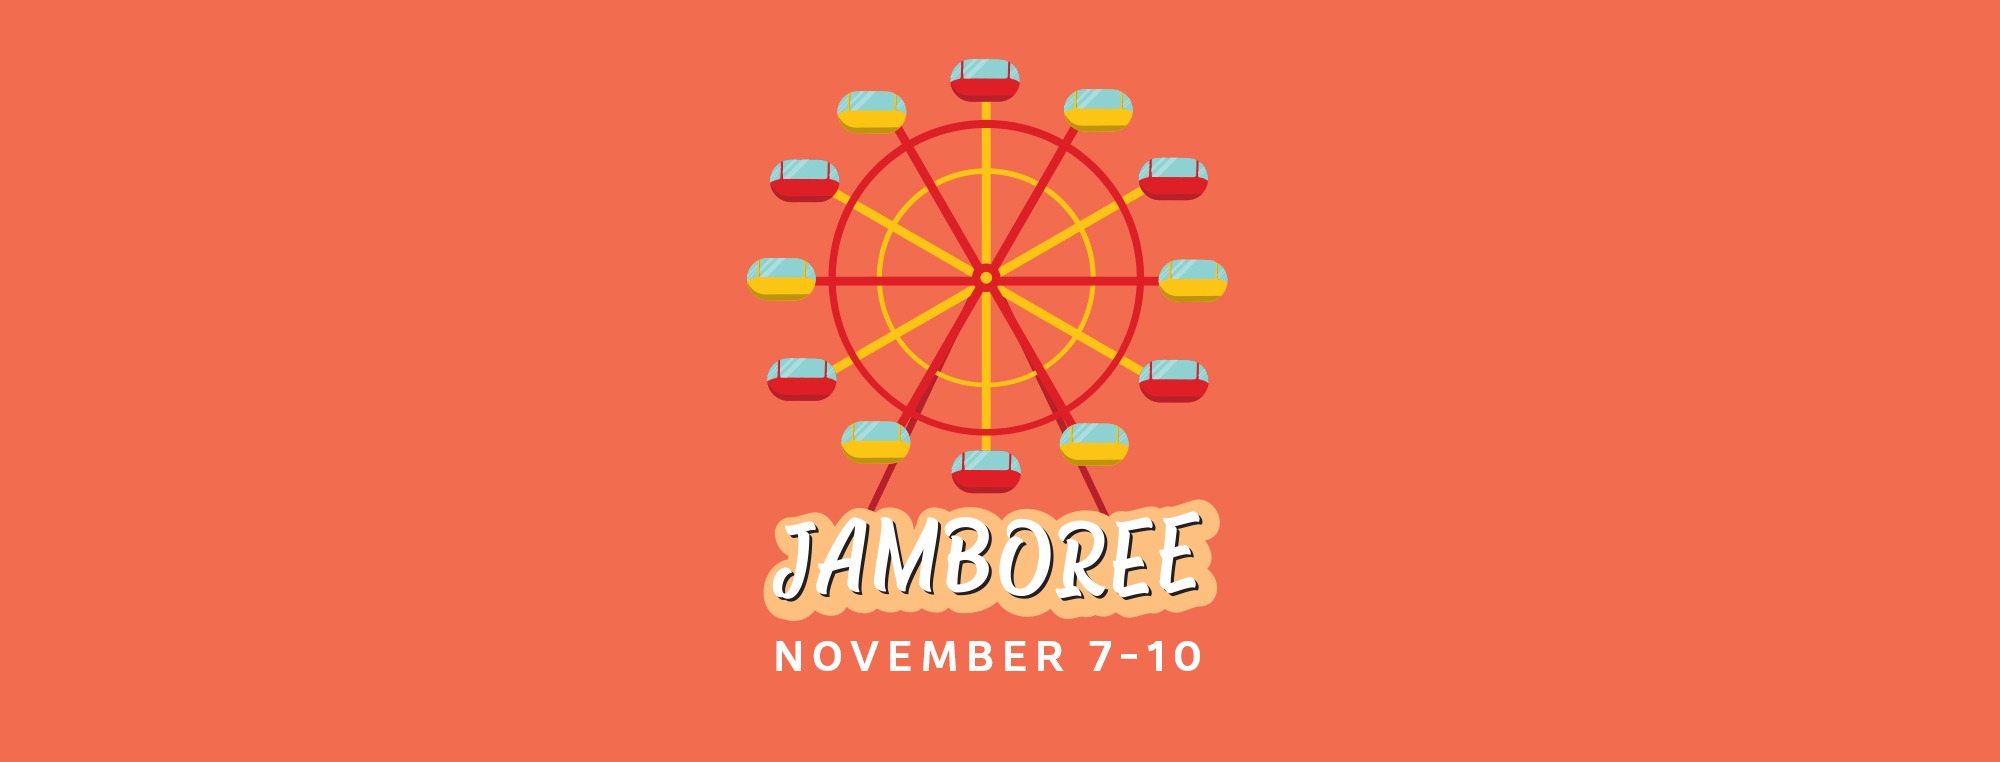 Jamboree 2019 Indian Rocks Jamboree 2019